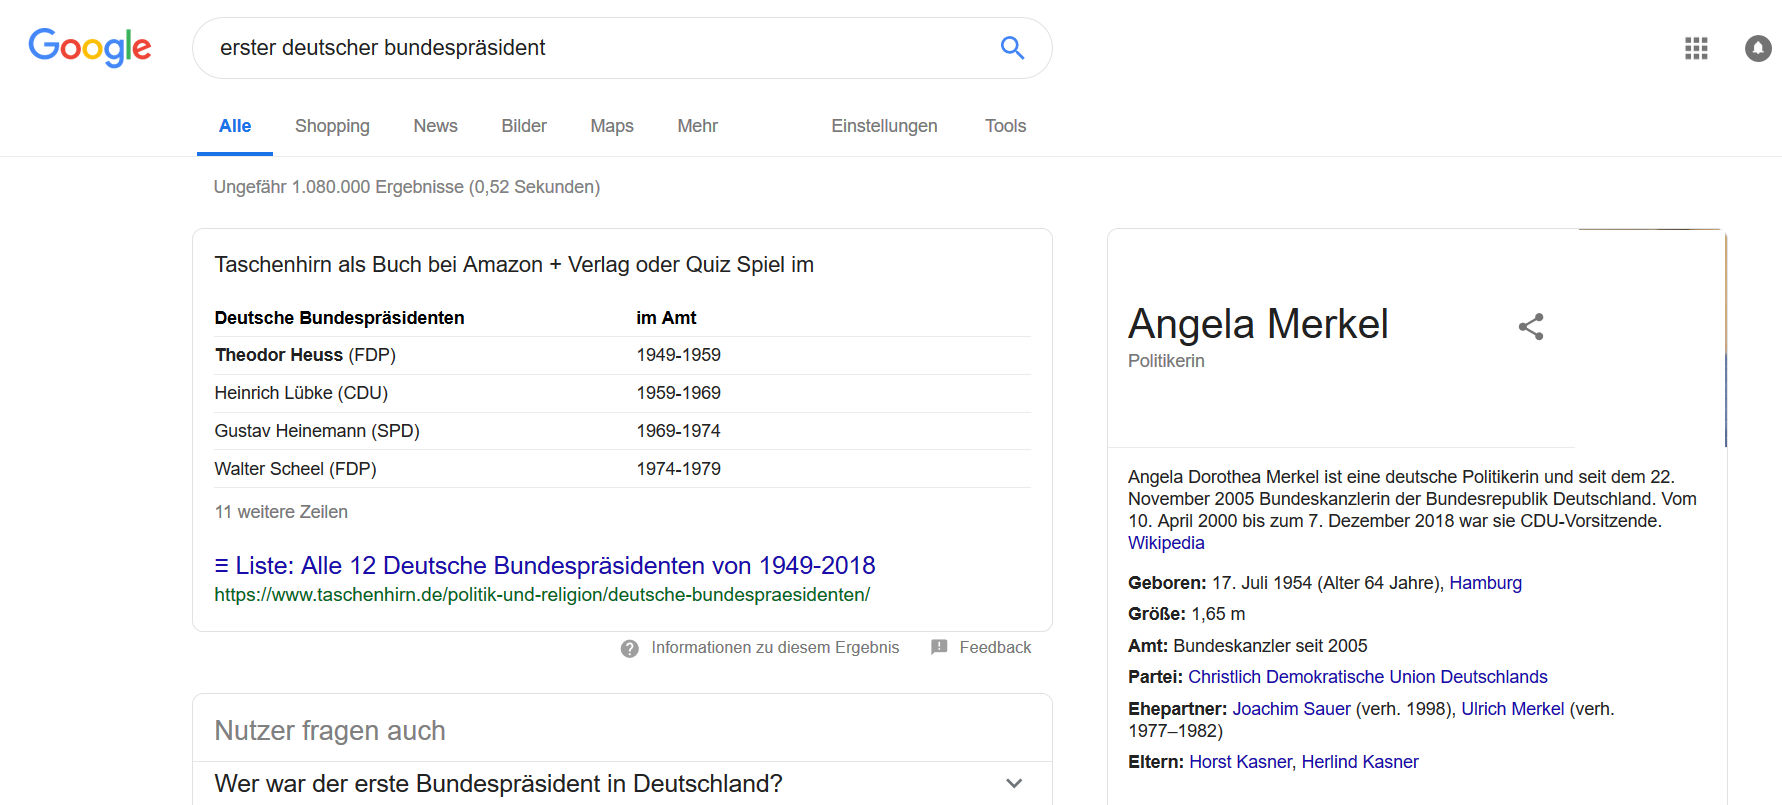 Google: manipulierte Suchergebnisseite